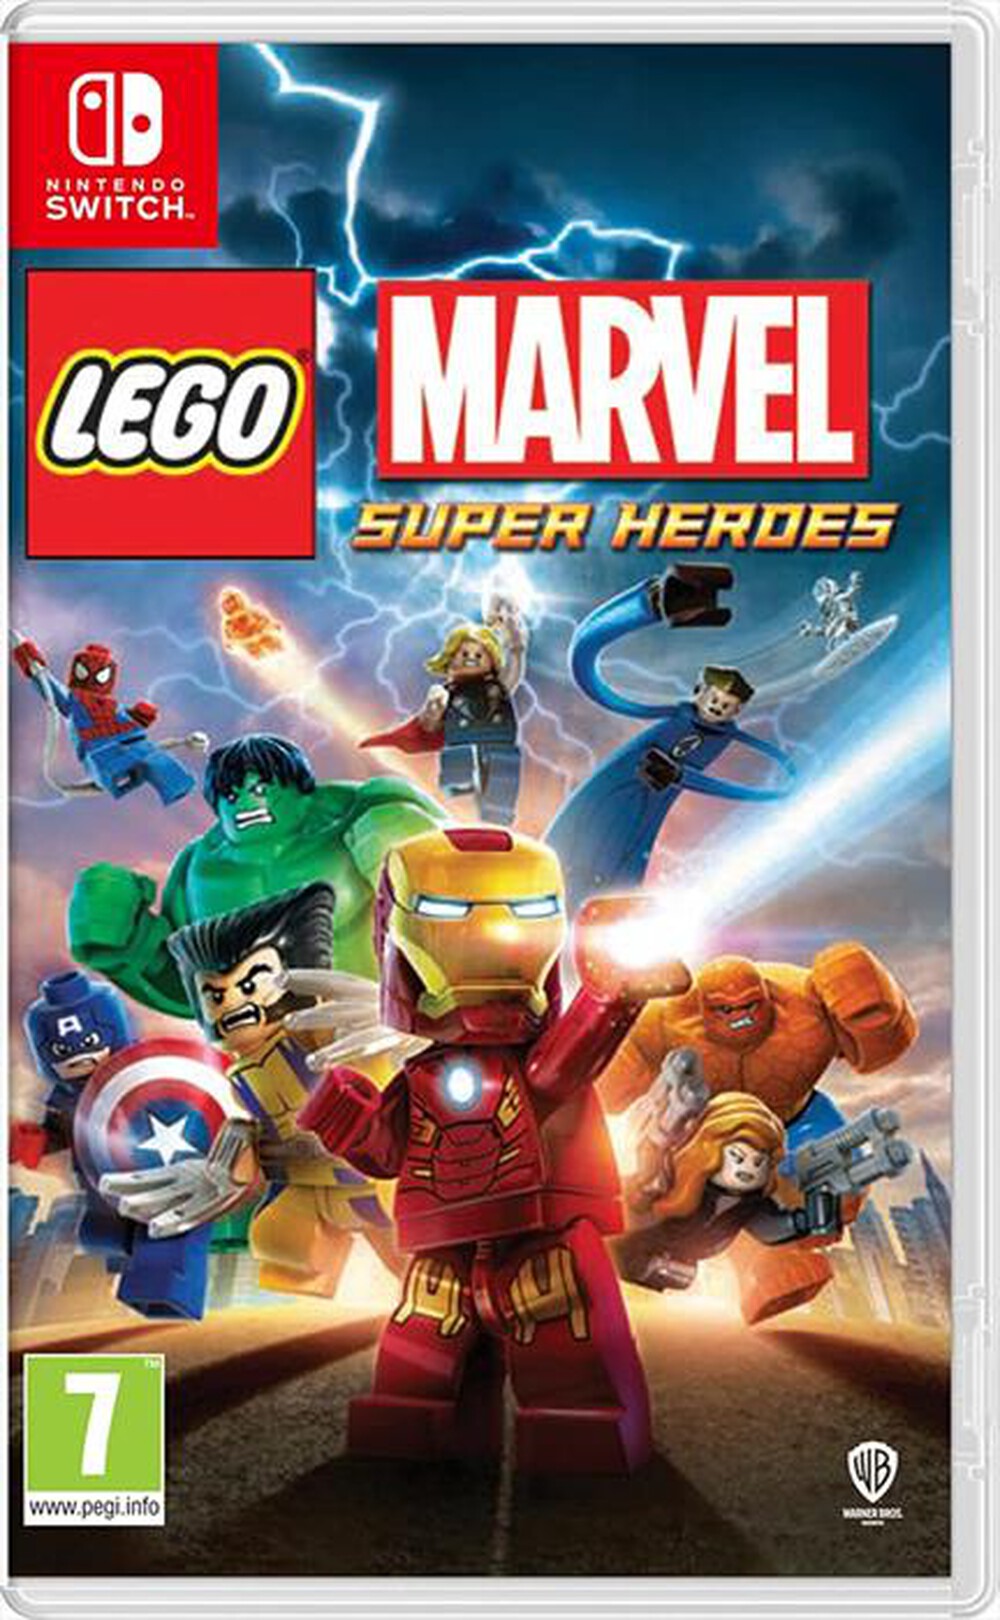 "WARNER GAMES - LEGO MARVEL SUPER HEROES (NS)"